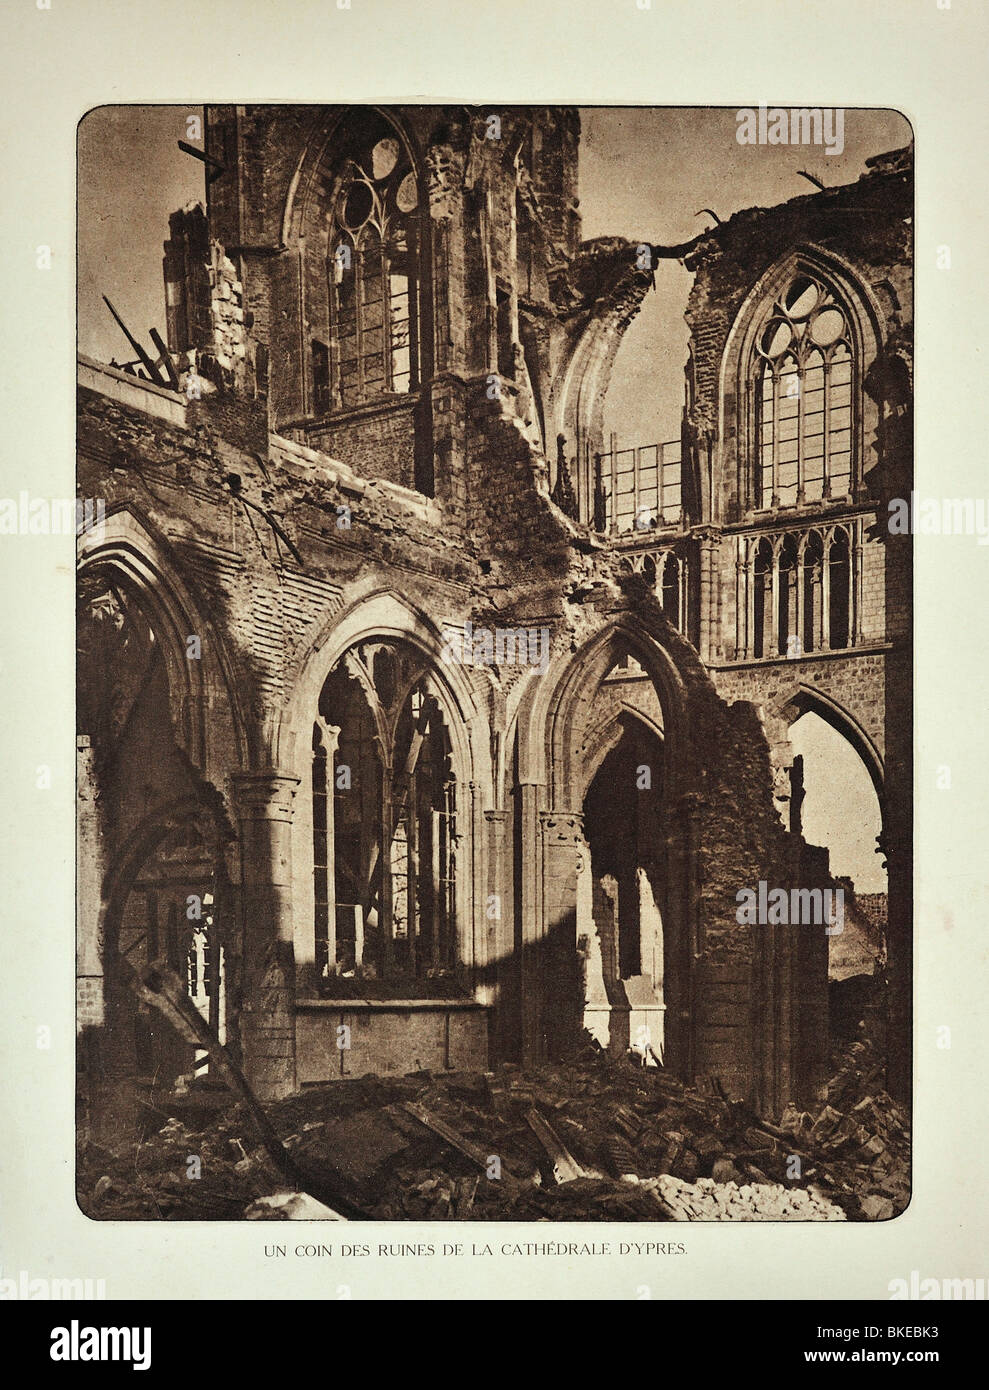 Ruinen der Kathedrale von Ypres / Ieper nach WWI Bombardement in West-Flandern während des ersten Weltkriegs ein, Belgien Stockfoto